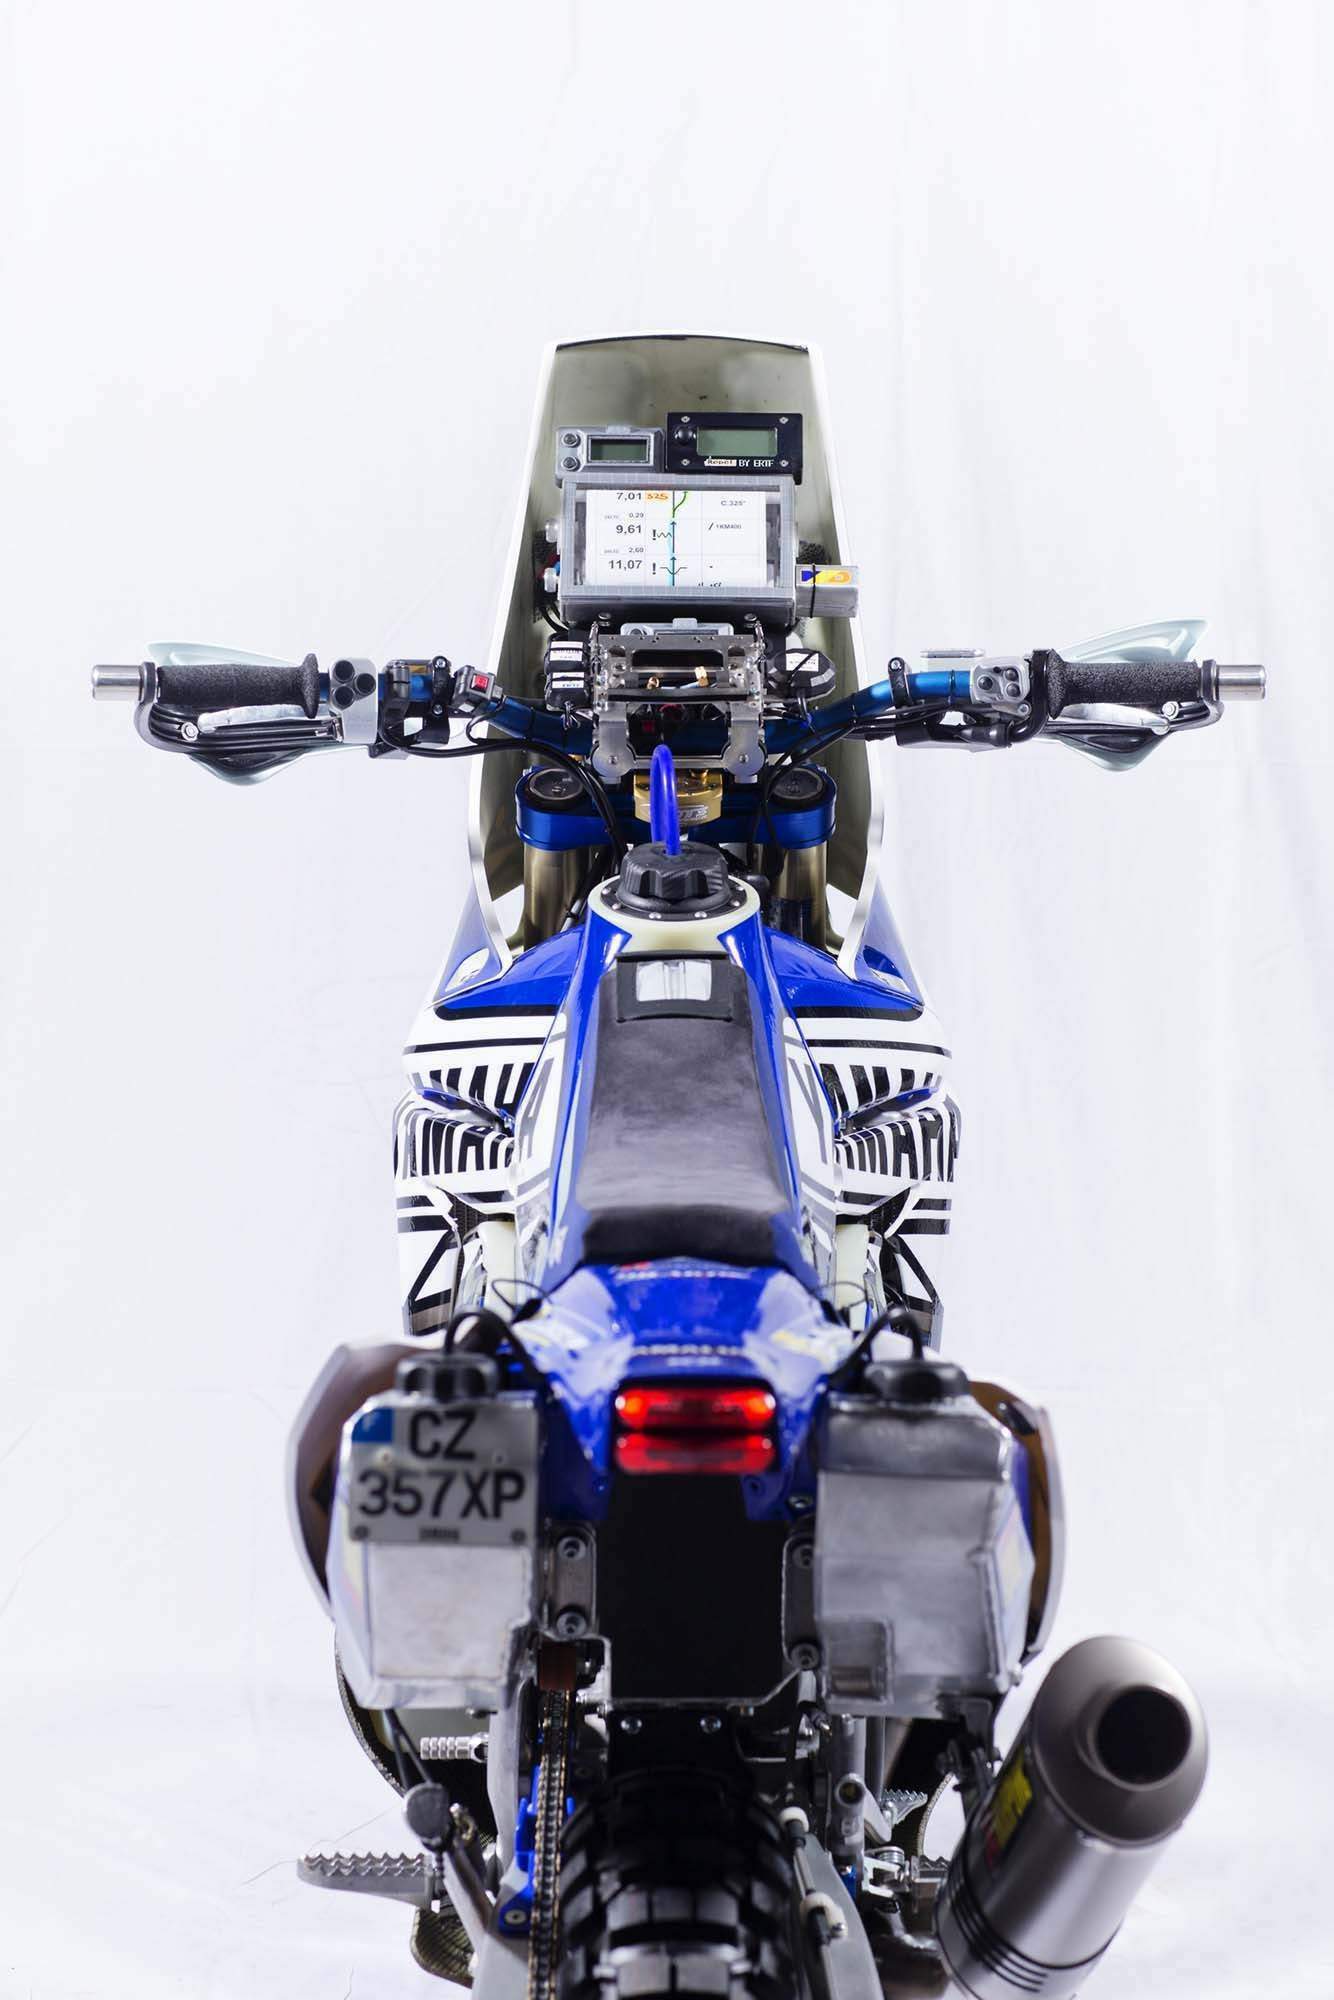 Мотоцикл Yamaha YZ 450F Rally 2014 фото